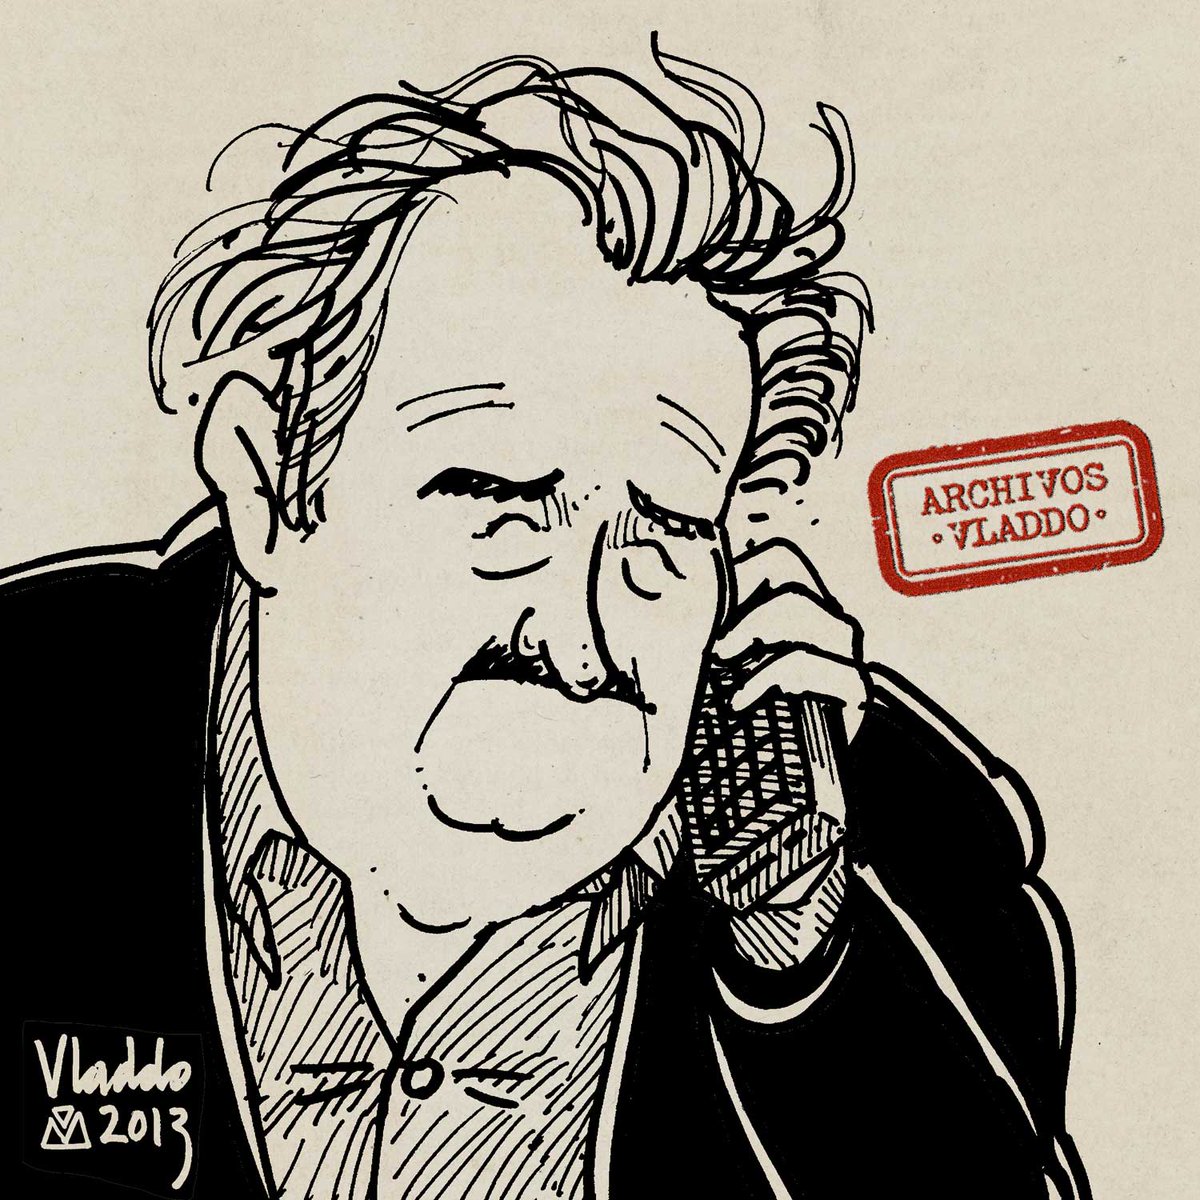 Un dibujo del archivo, para desearle una pronta y plena recuperación a don Pepe Mujica. #PepeMujica — #FuerzaMujica @pepemujicacom